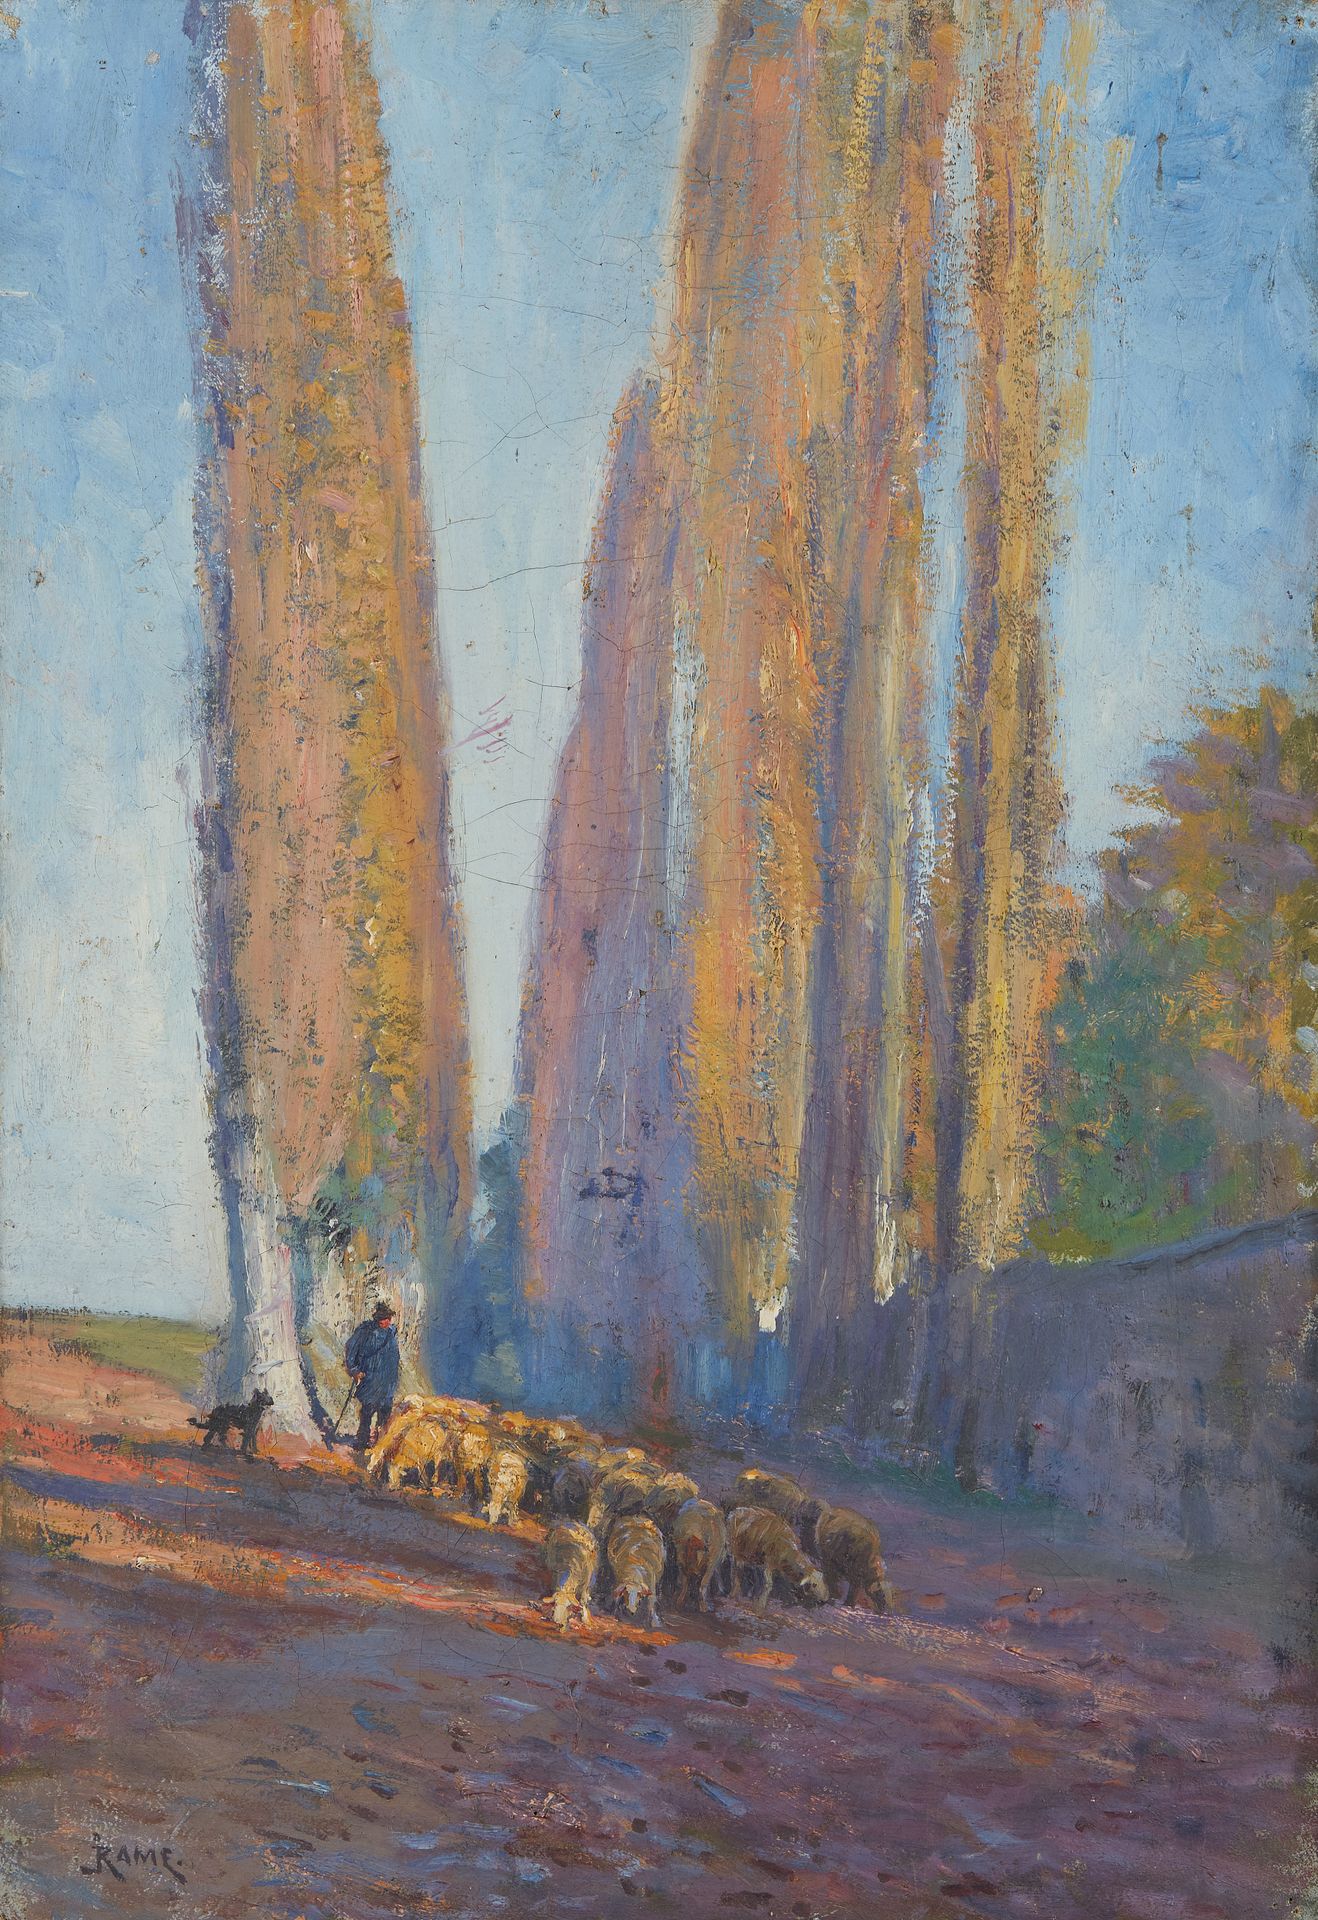 Null 儒勒-路易-拉梅 (1855 - 1927)

牧羊人

布面油画。

左下方有签名。

55 x 38厘米。

画布膨胀并部分固定在框架上